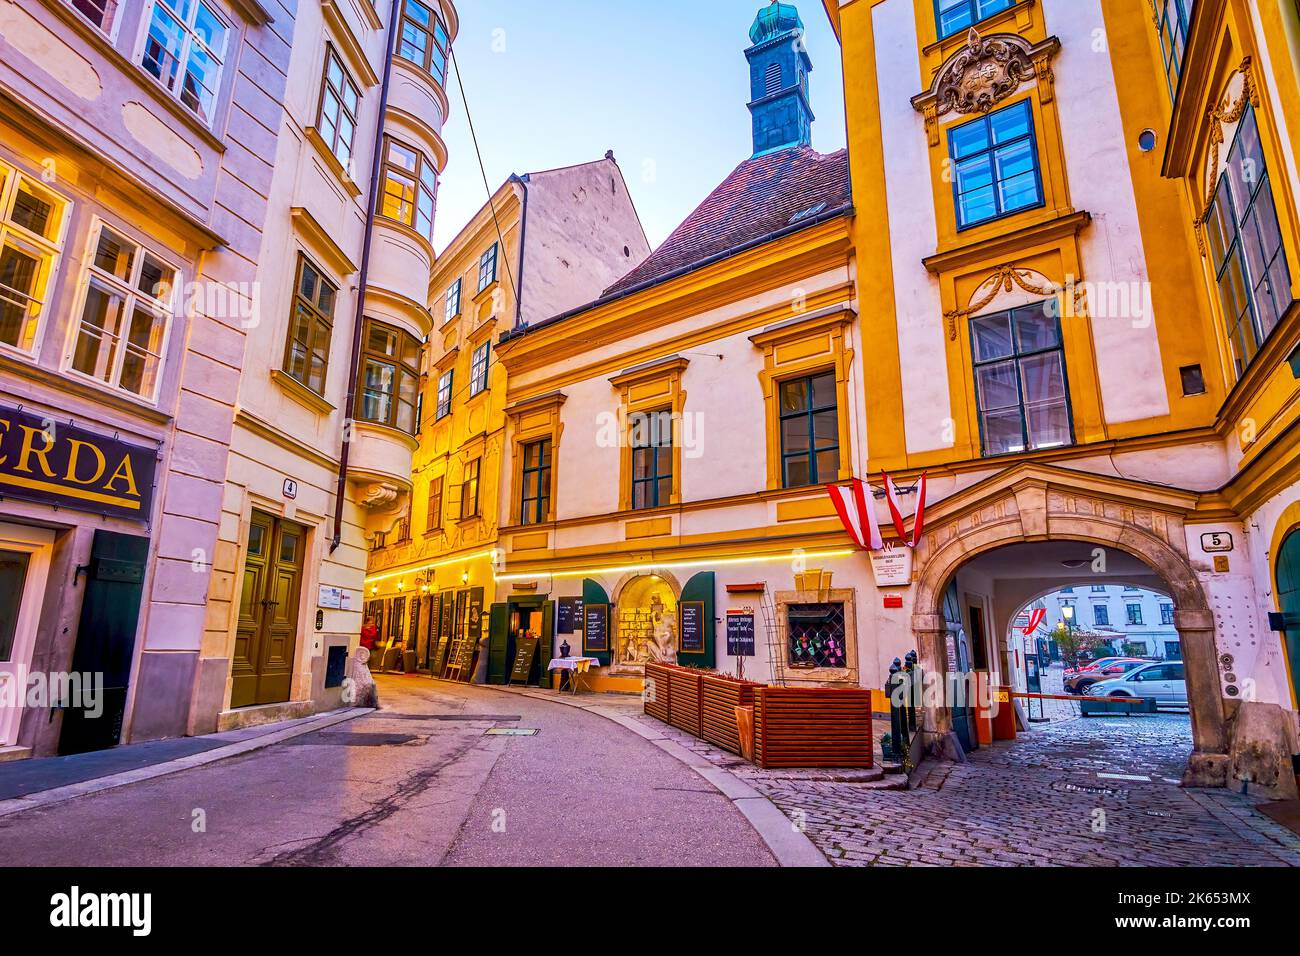 VIENA, AUSTRIA - 17 DE FEBRERO de 2019: El corazón medieval del distrito de Innere Stadt de Viena, con casas históricas y pintorescos arcos, el 17 de febrero Foto de stock